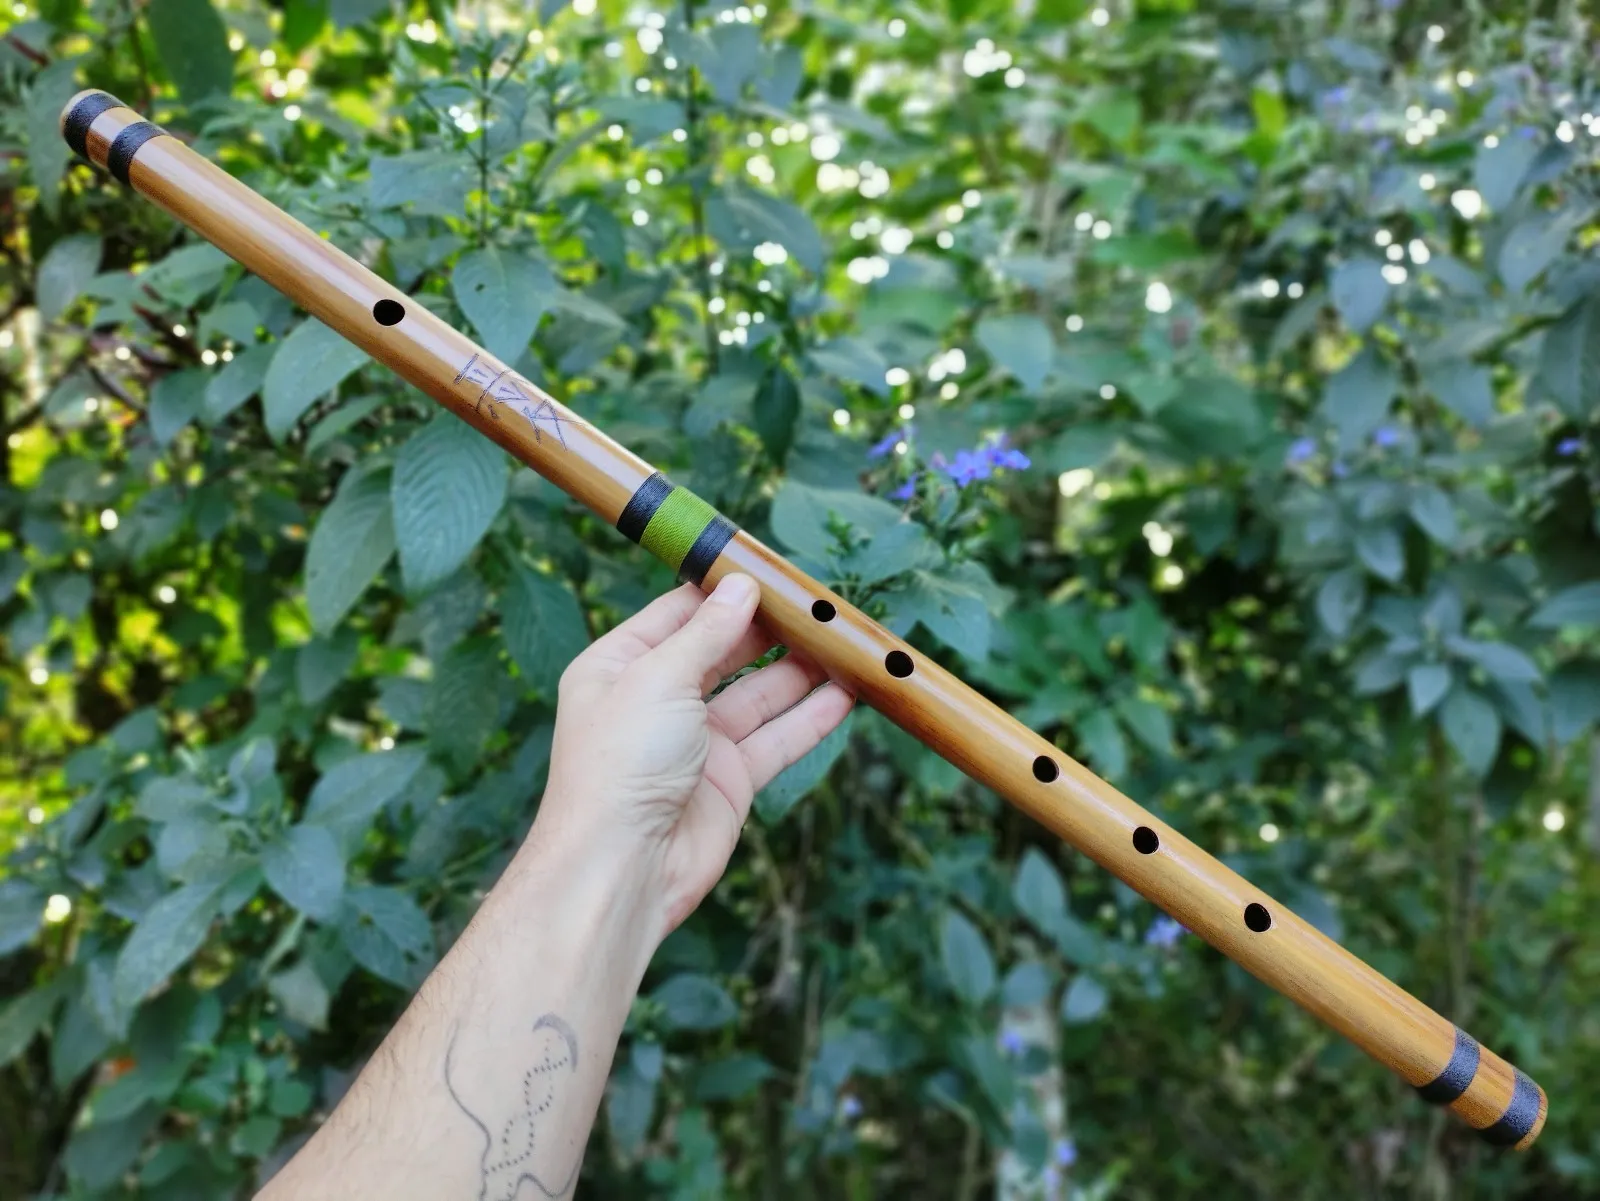 Zen -Bambusflöte D